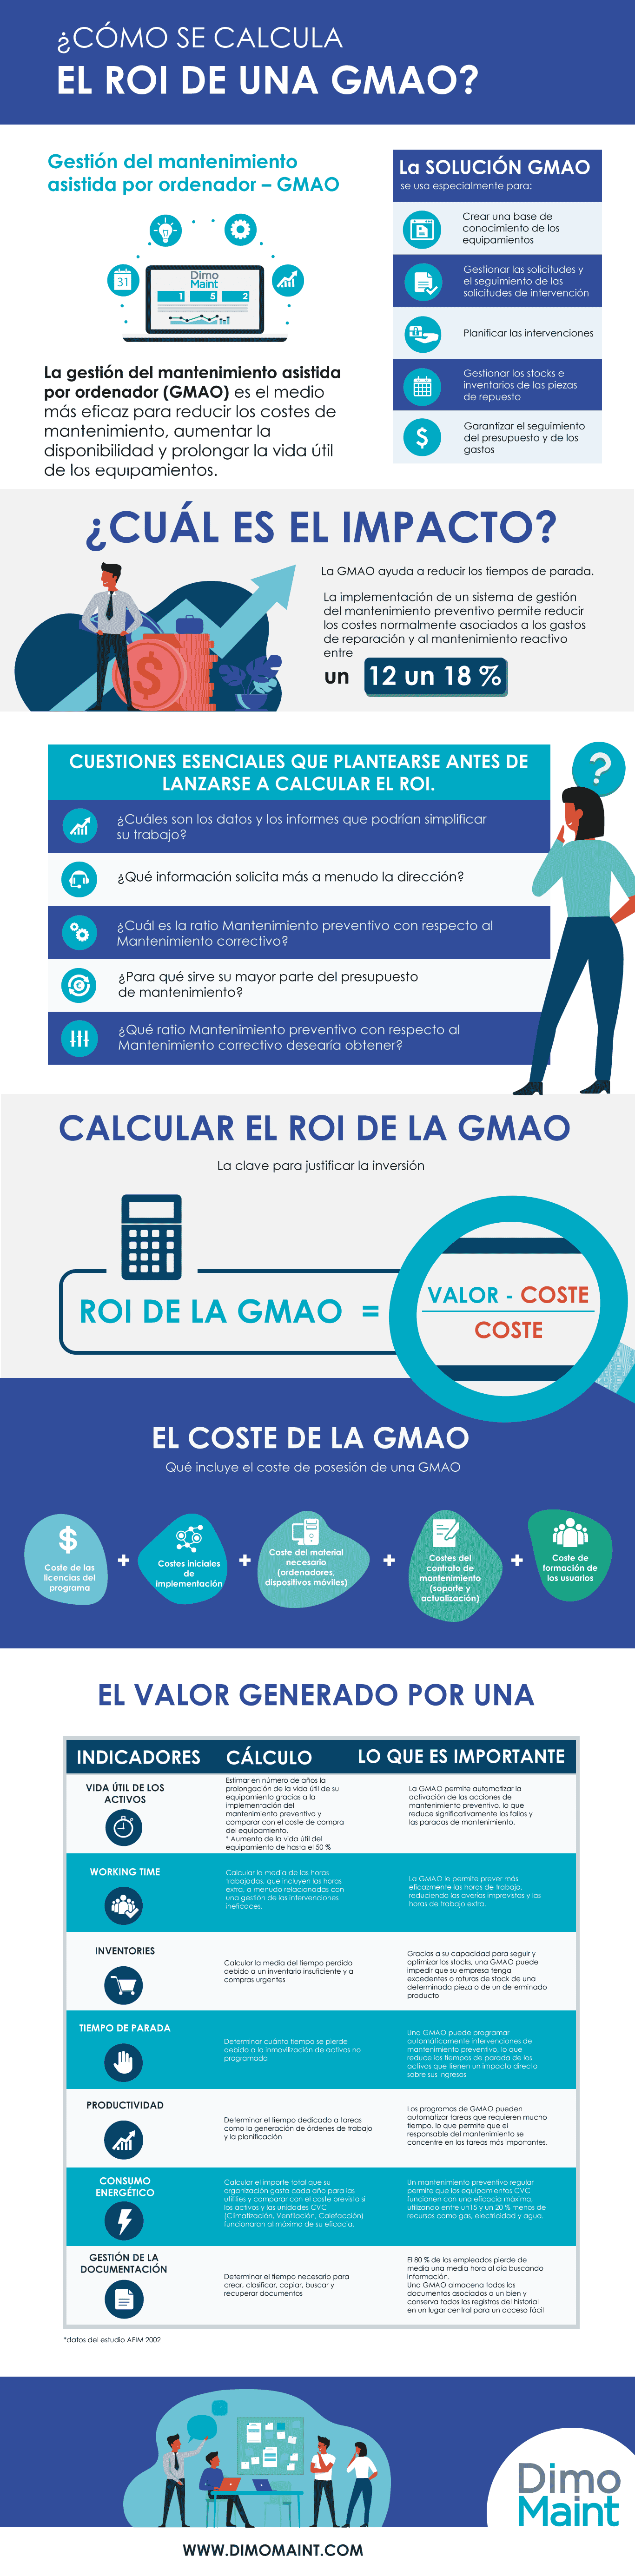 DIMO Maint calcular ROI GMAO